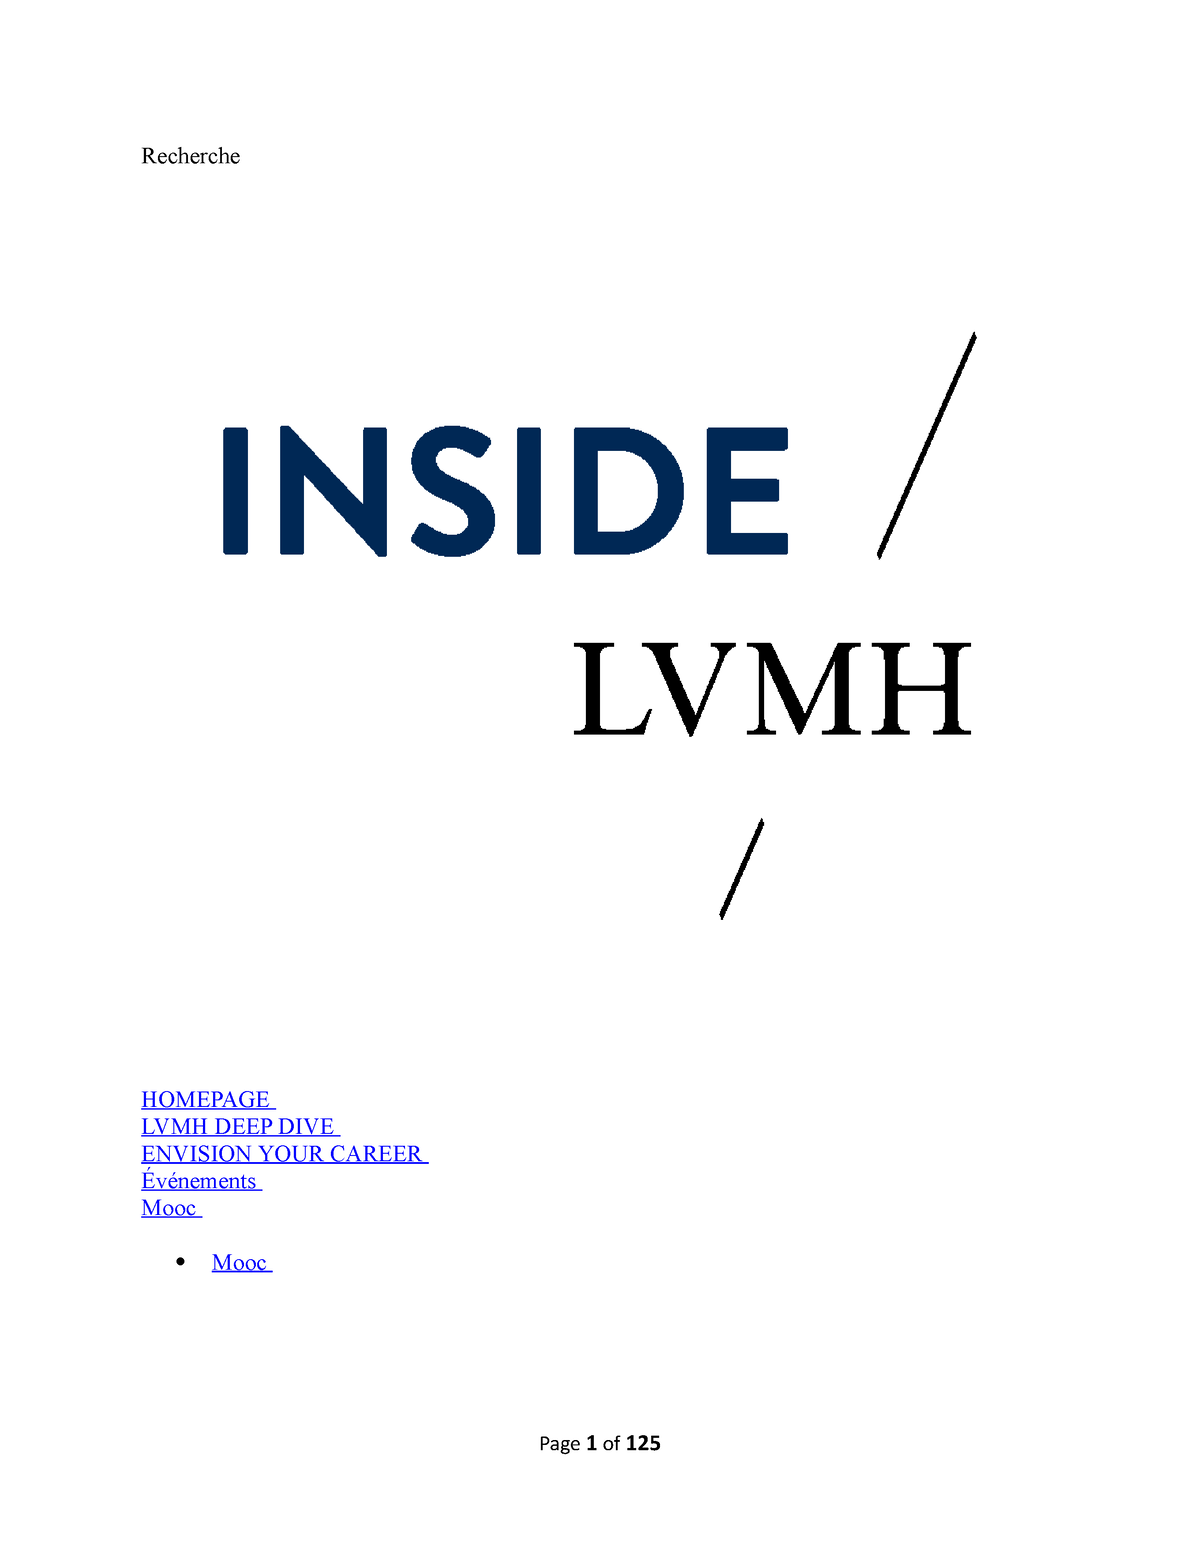 LVMH kicks off recruitment for Maison des Startups - LVMH